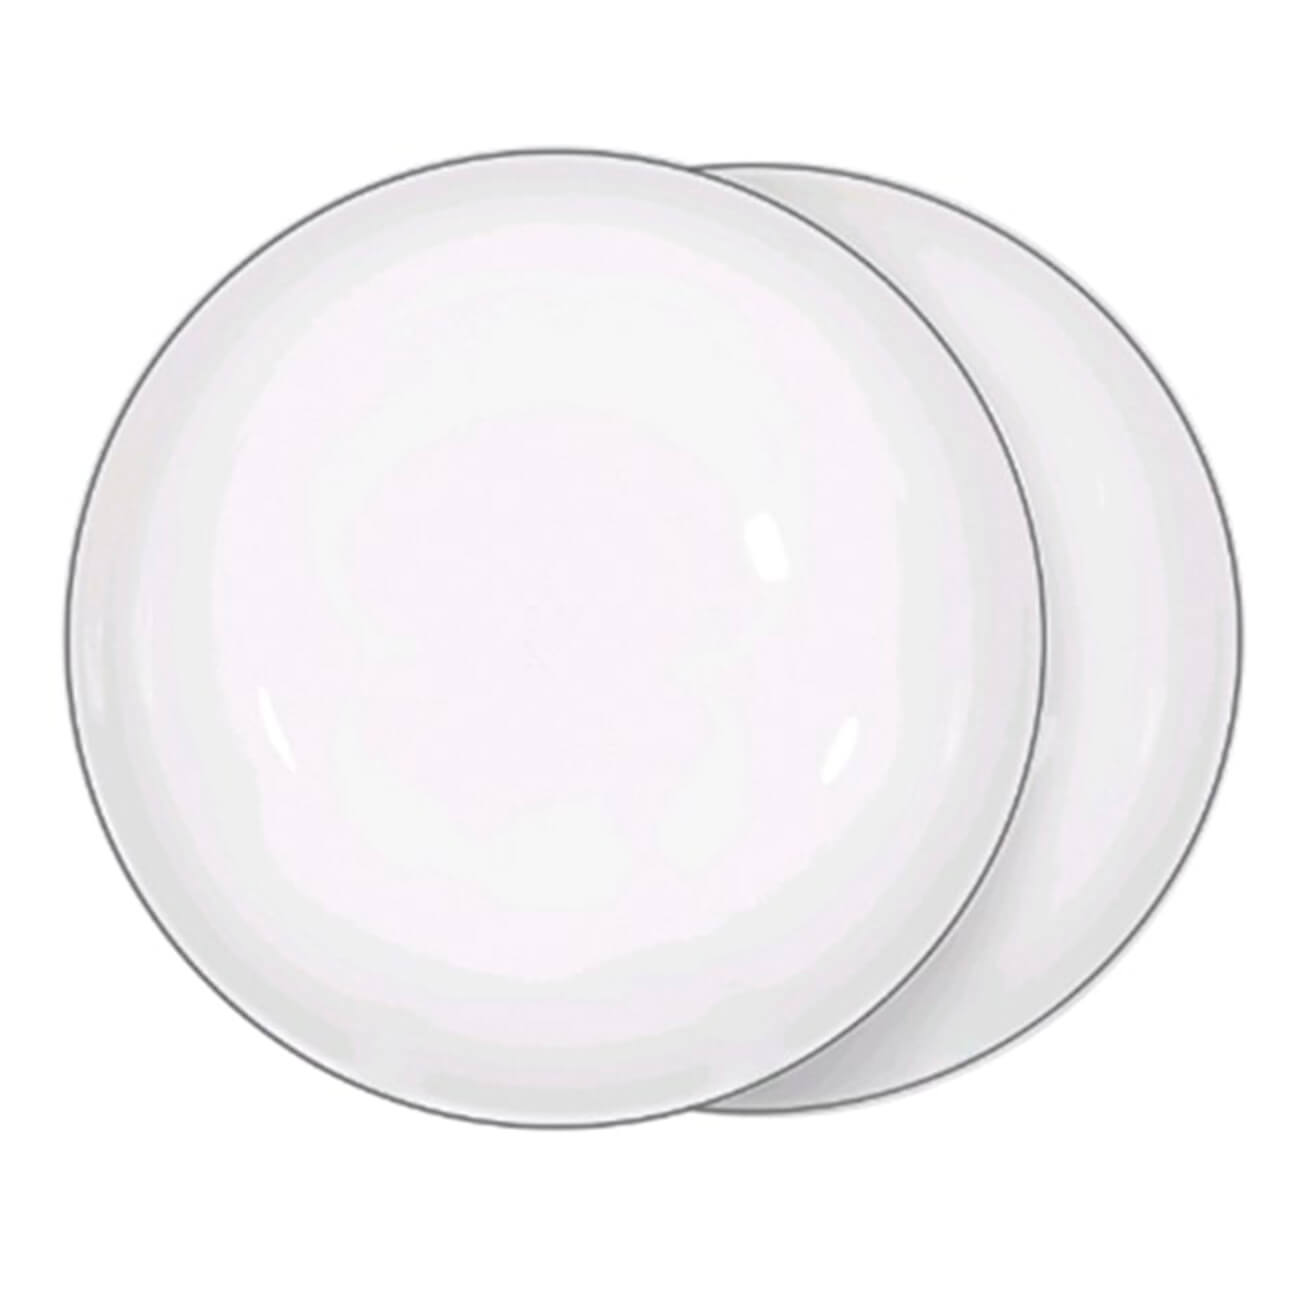 Тарелка суповая, 20х5 см, 2 шт, фарфор F, белая, Ideal silver суповая пластиковая тарелка eurohouse